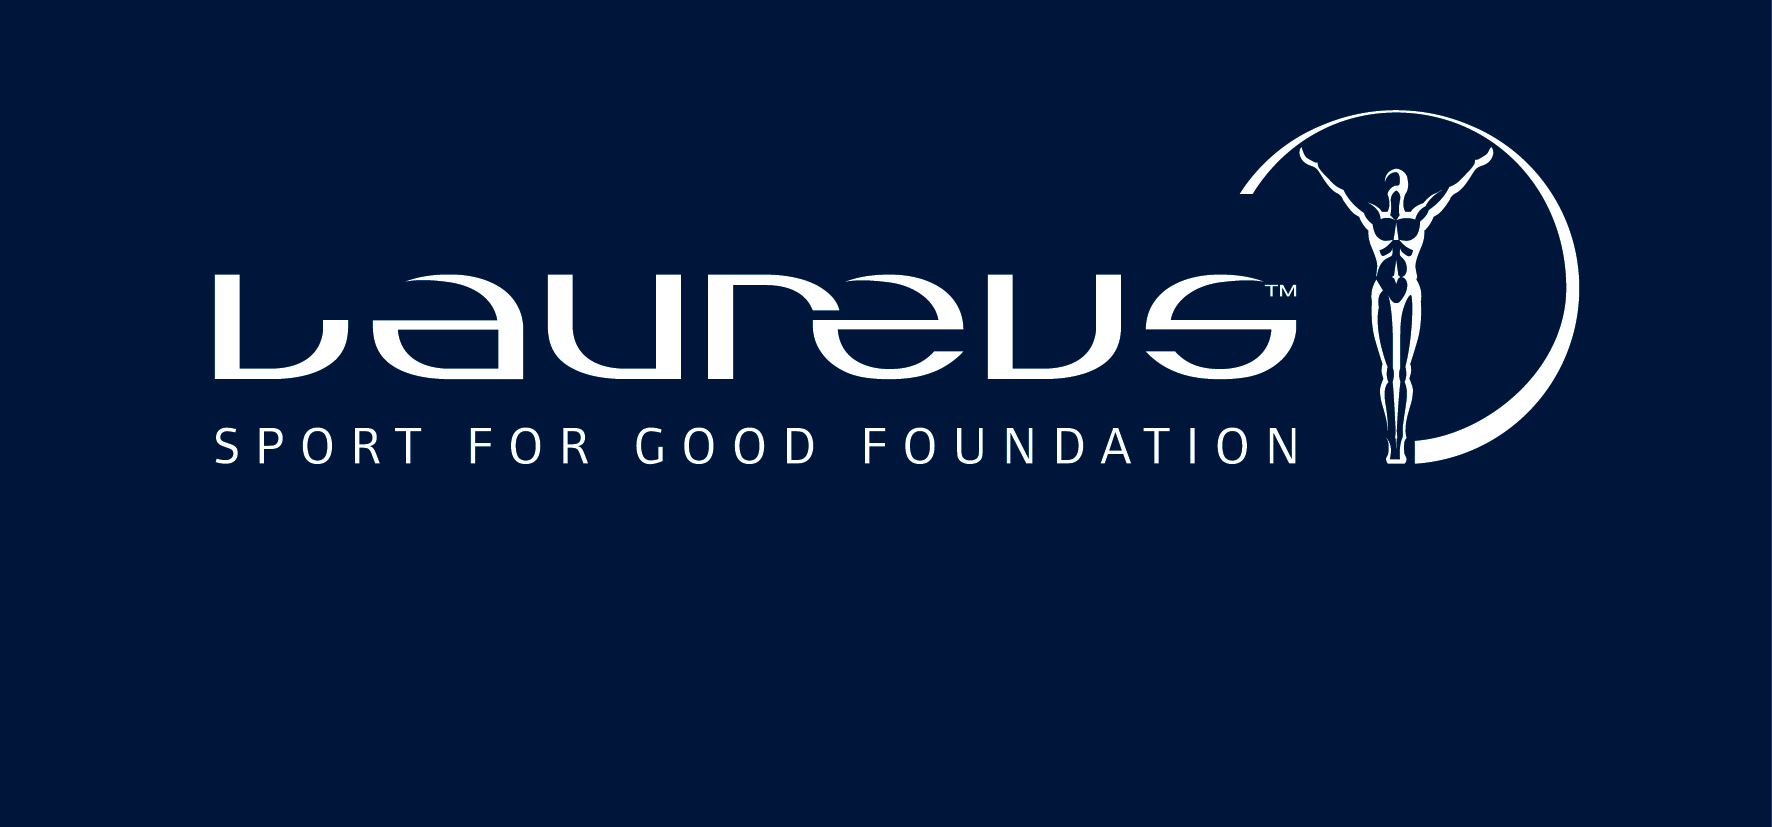 Mercedes Announces 10.5M Grant to Laureus Sport for Good Foundation